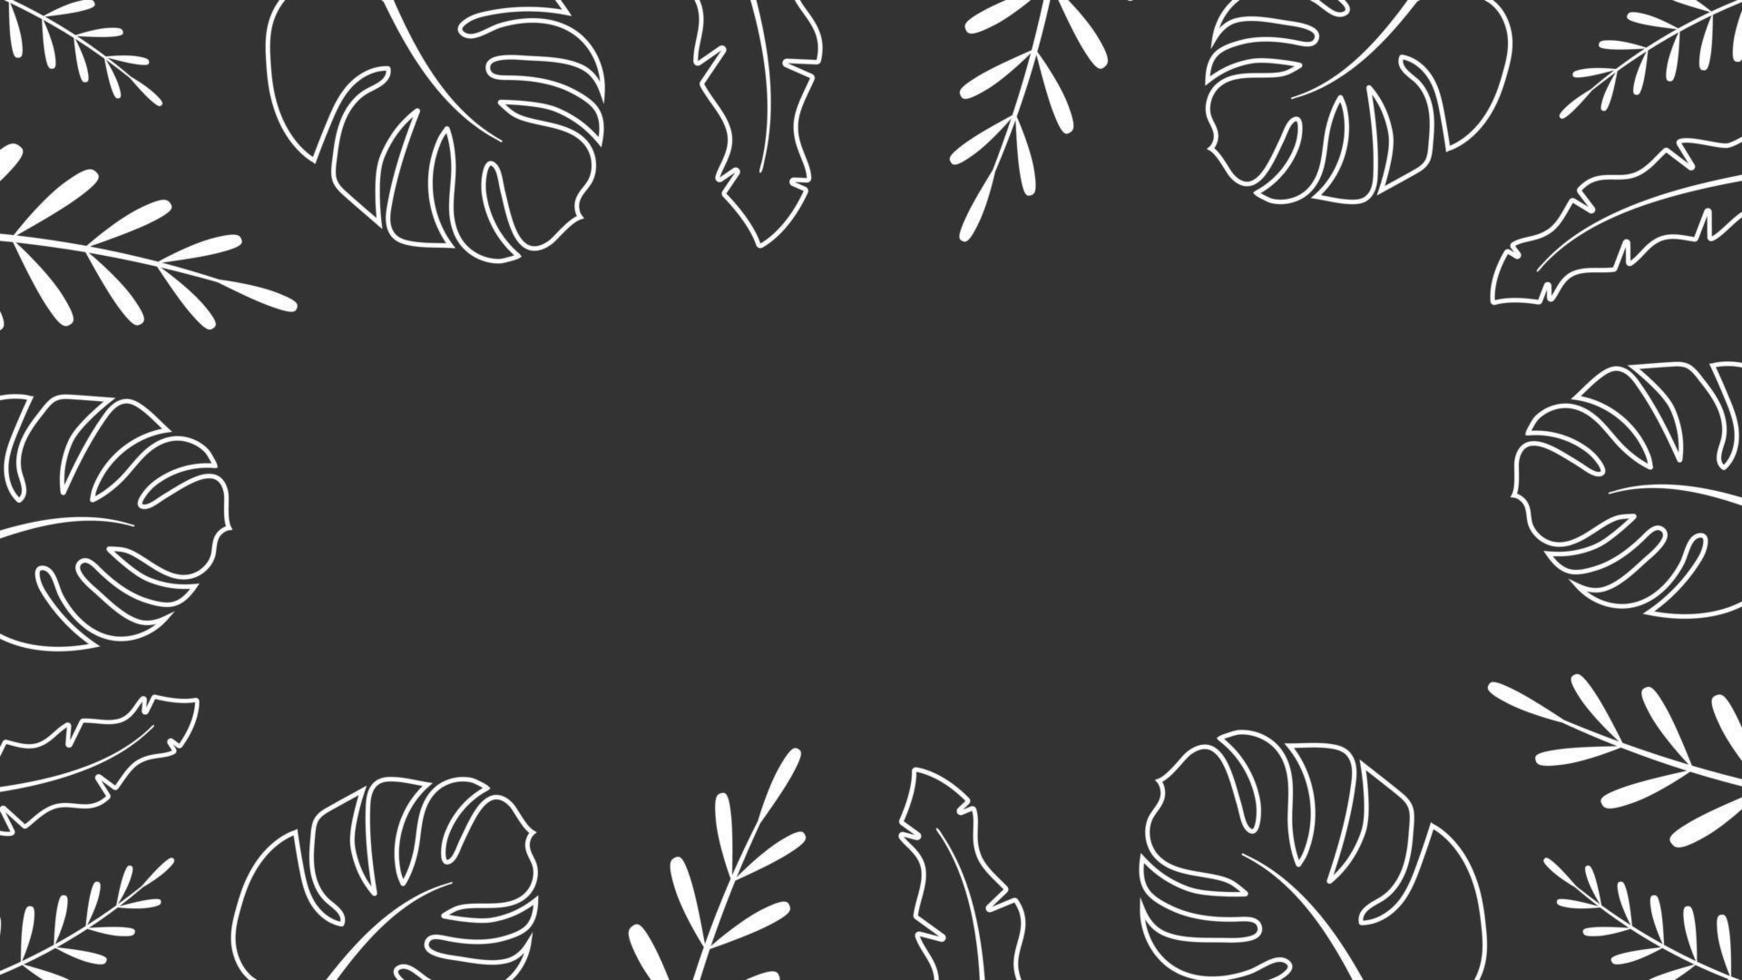 ornement de cadre de fond de feuilles tropicales. plantes de la jungle blanche autour des bords avec un espace blanc au centre. bannière de doodle abstraite d'été avec décor de vecteur botanique